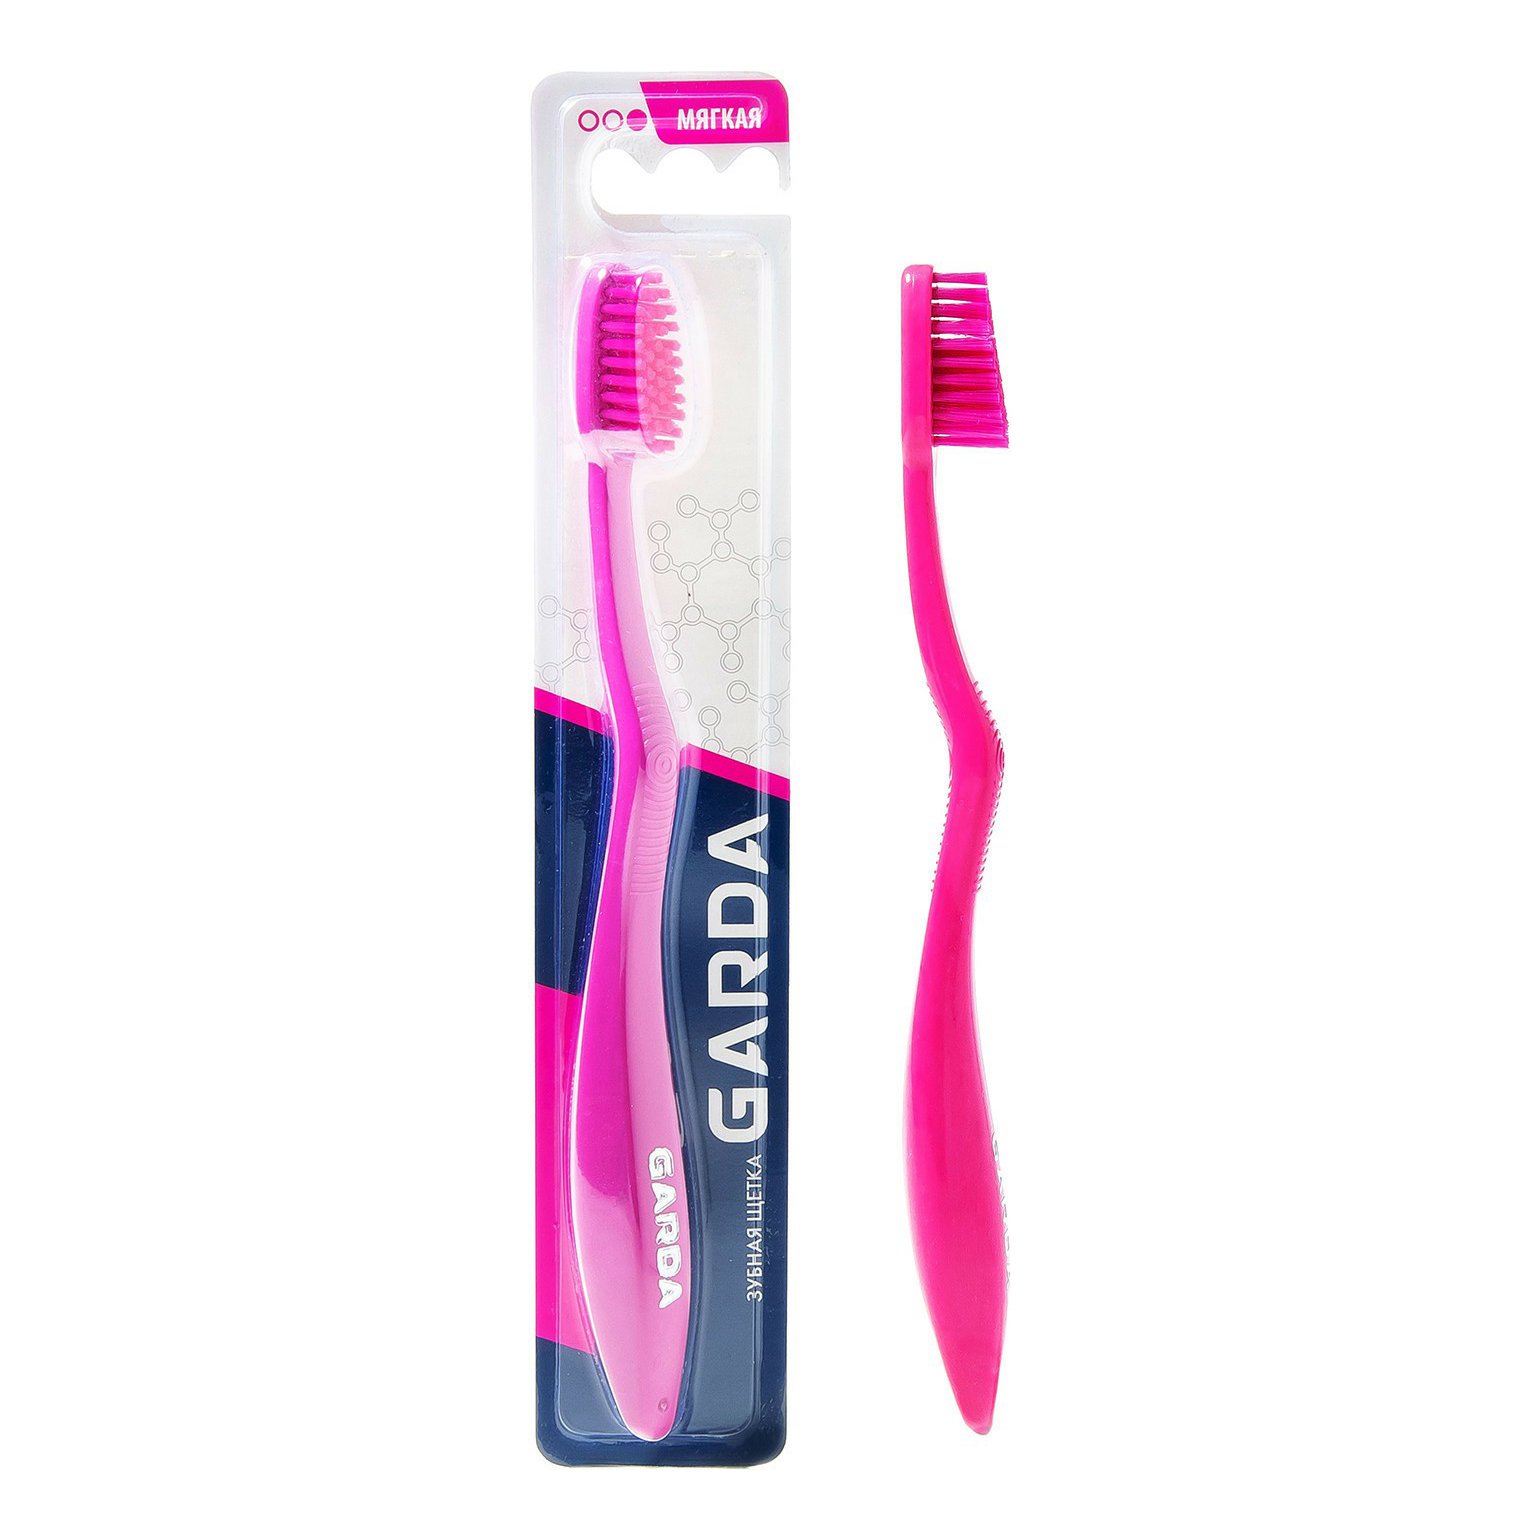 Зубная щетка Garda Classic мягкая в ассортименте зубная щетка aquafresh clean and reach в ассортименте